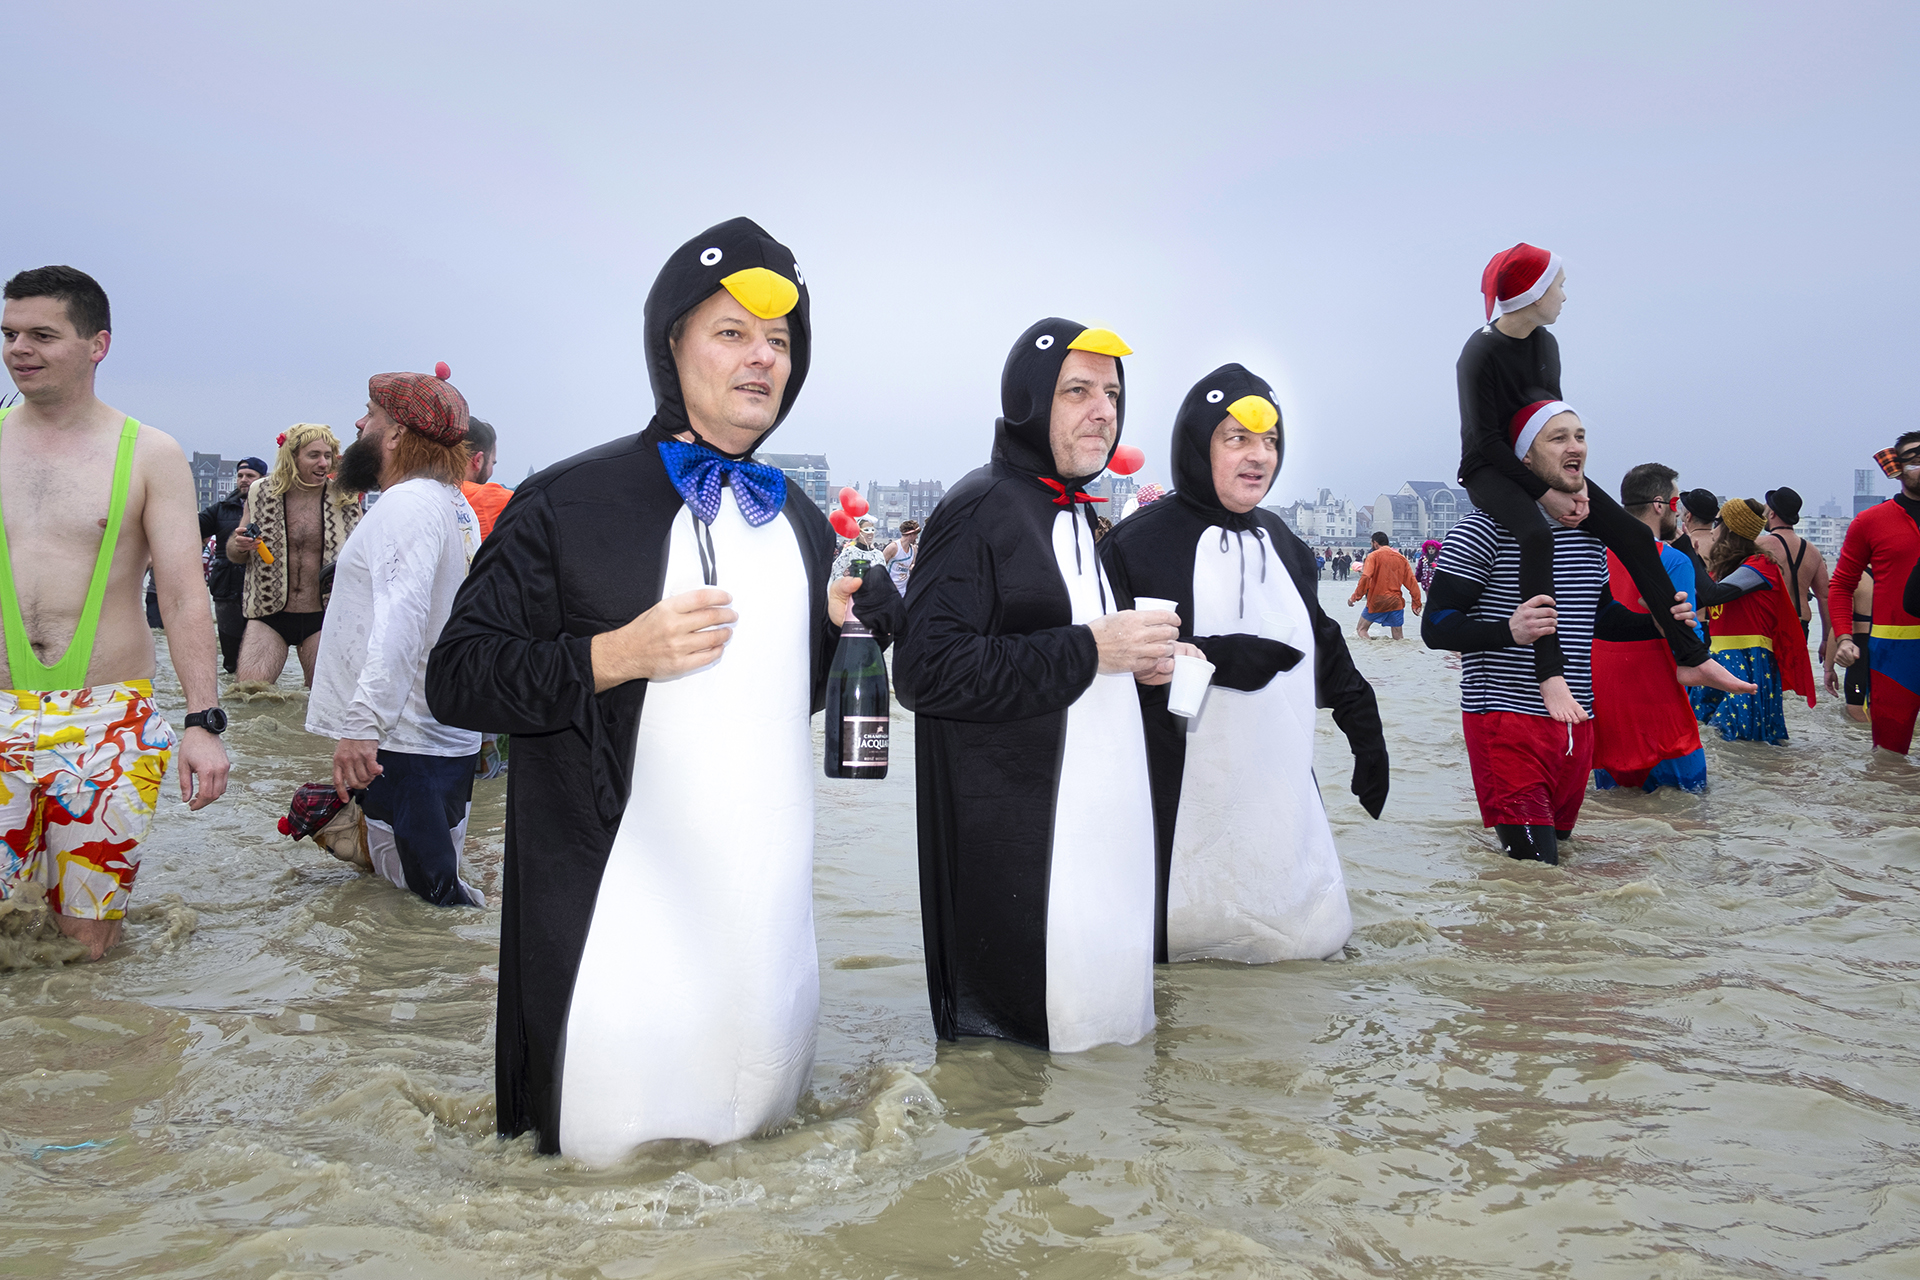 Tiga laki-laki berkostum penguin menyelam di laut